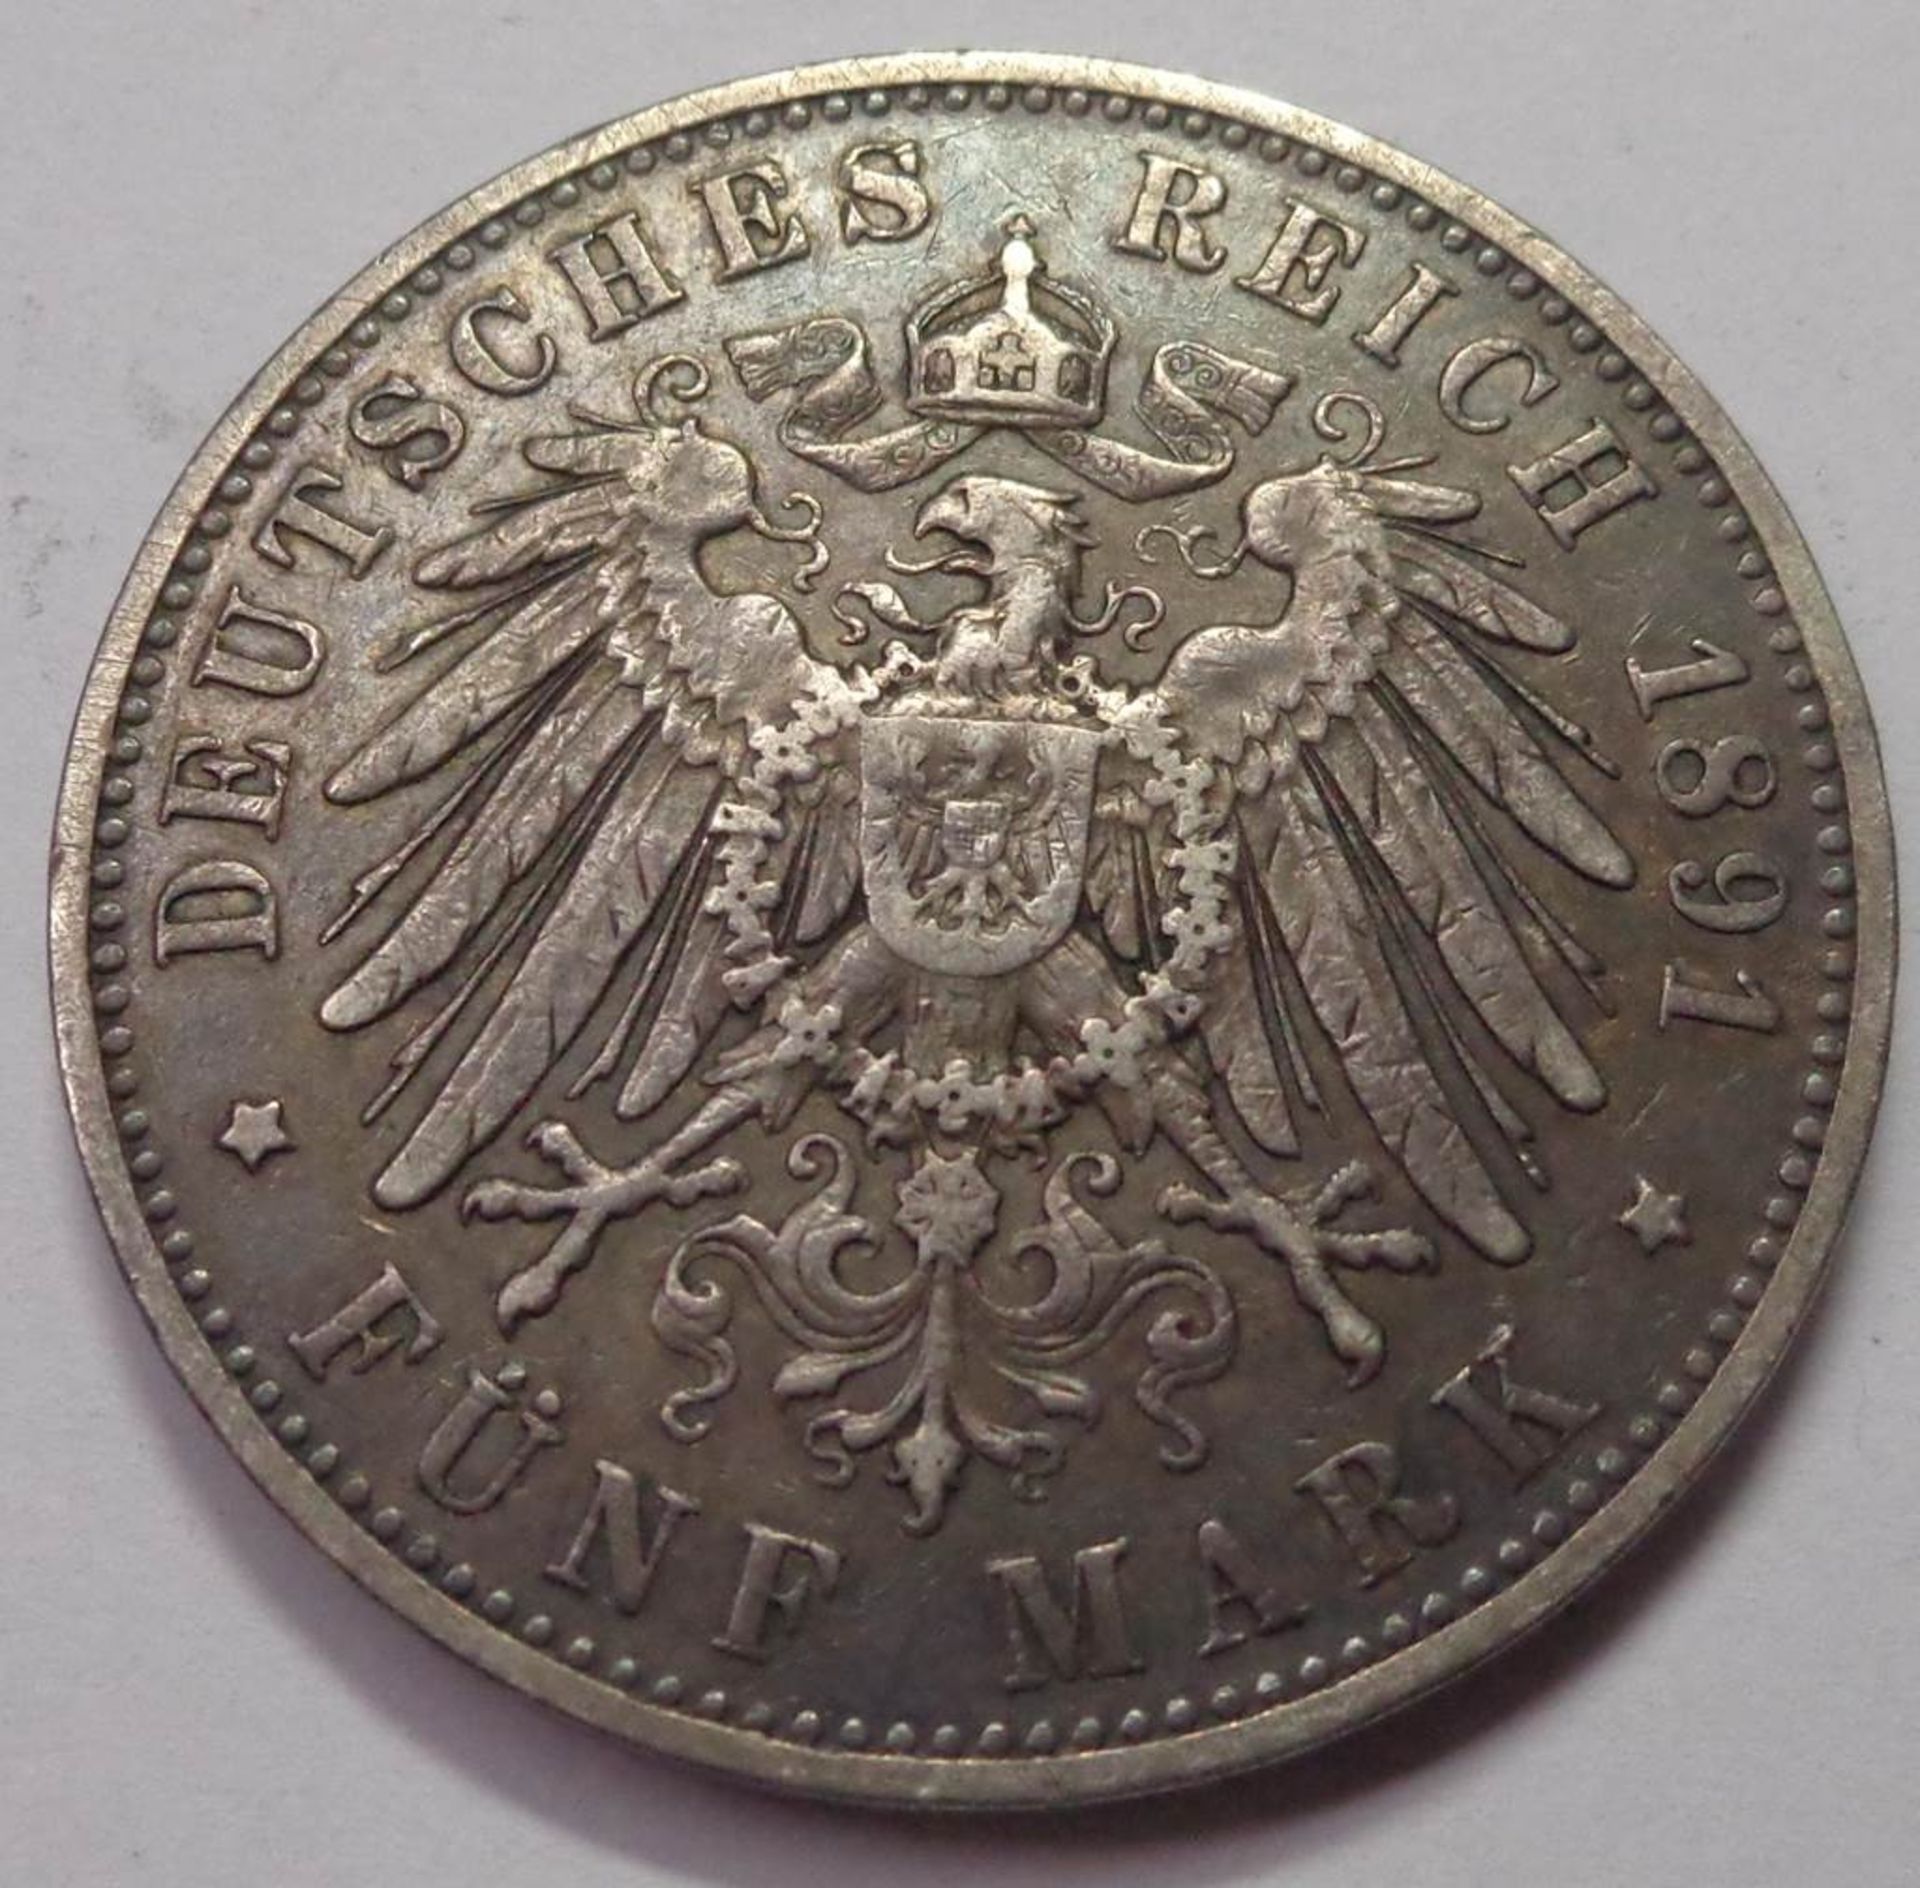 Fünf Mark, Deutsches Reich 1891 E, Albert König v. Sachsen, s-ss, 27,59 g